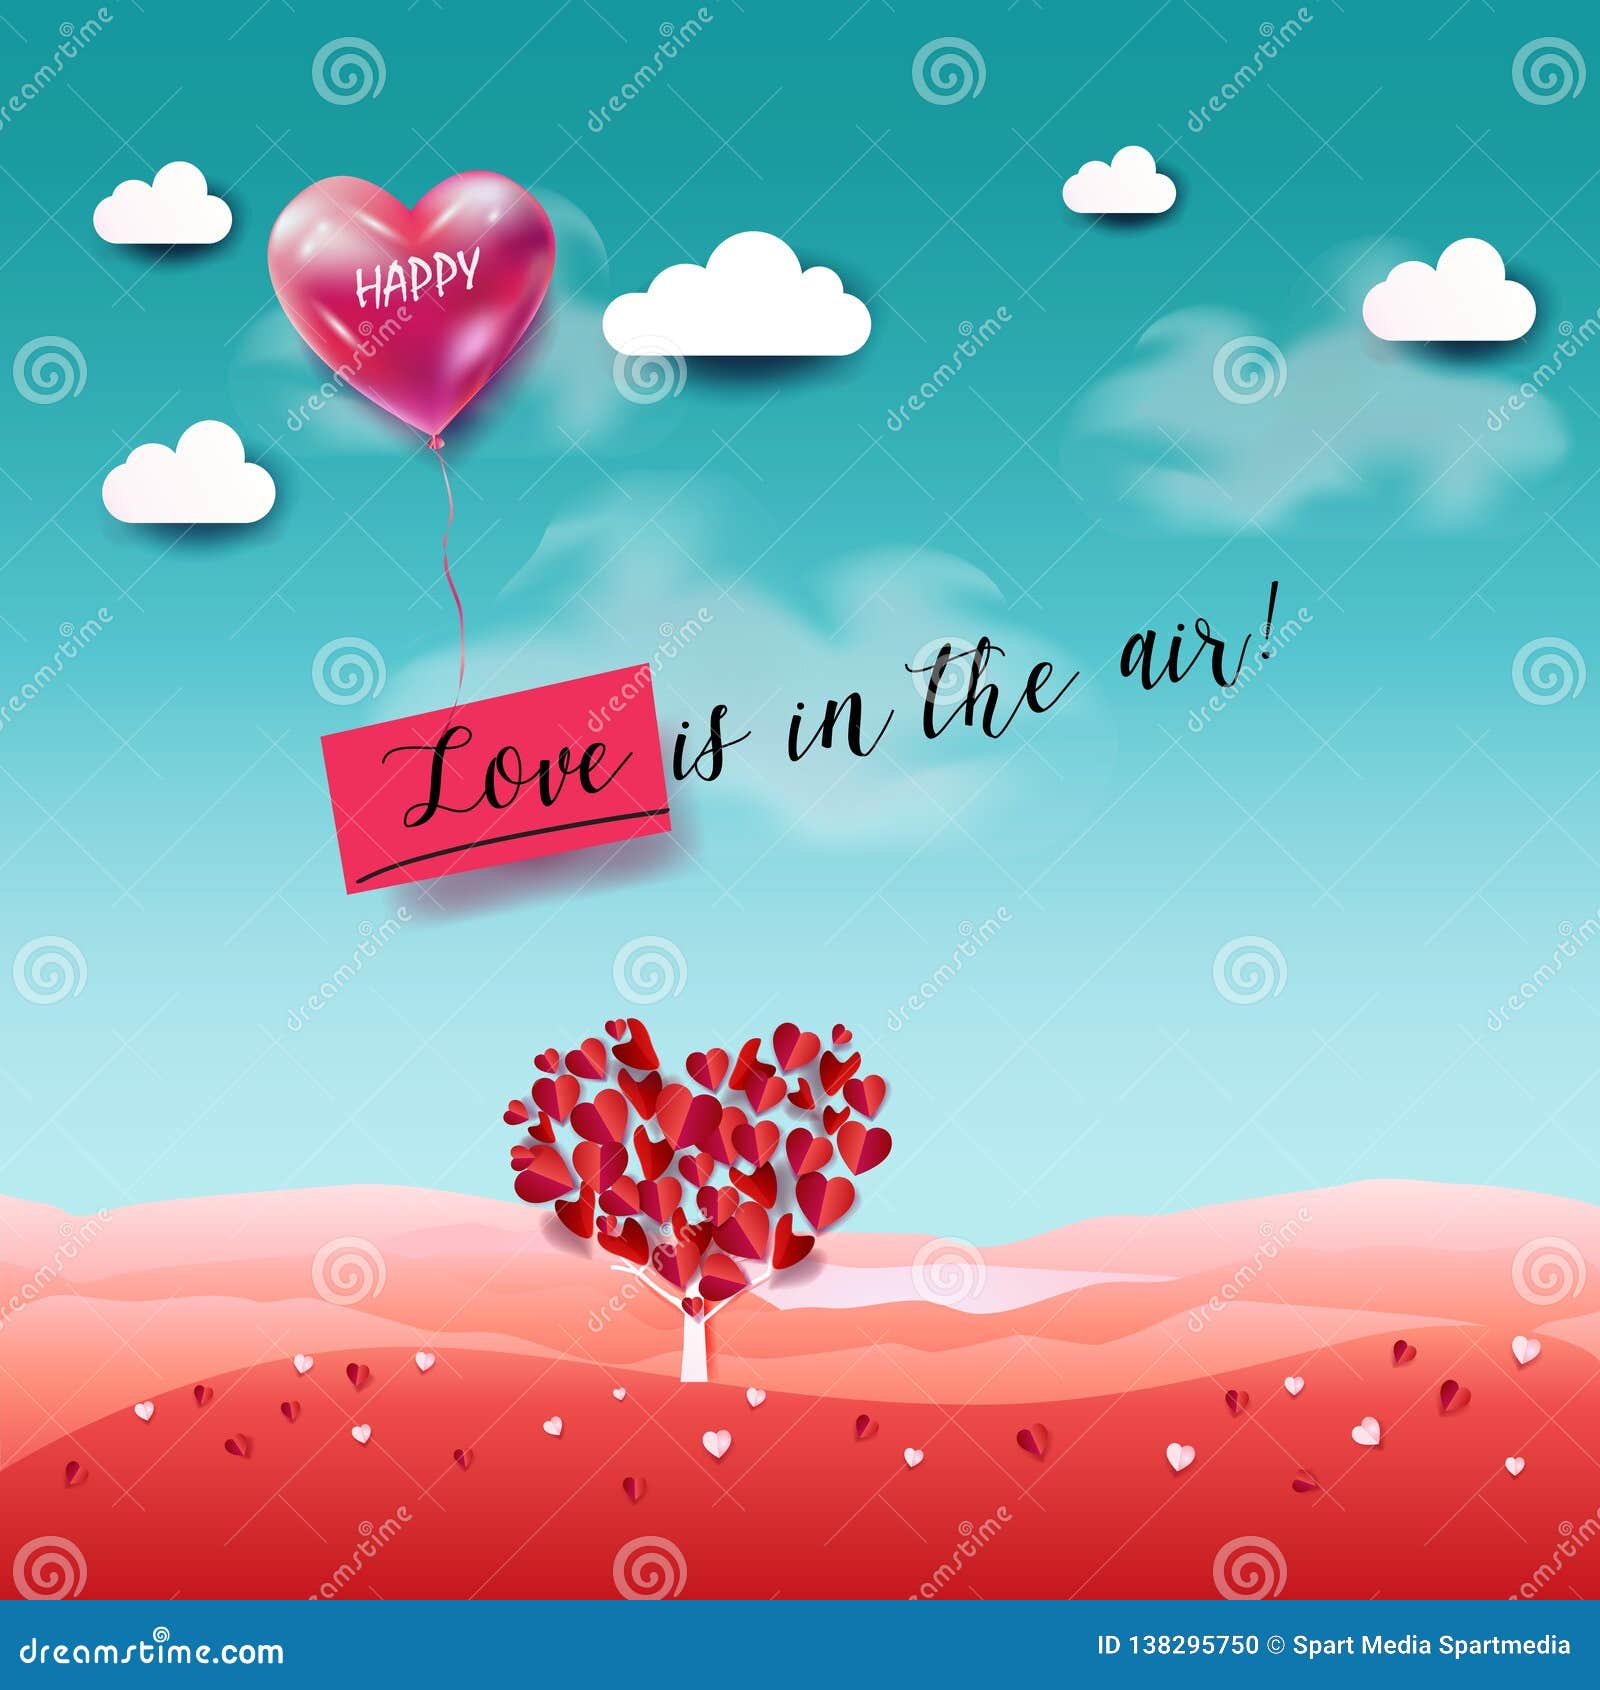 I love air. Love is in the Air реклама. Love is in the Air. Love is in the Air Sky. Love is in the Air надпись на шаре.